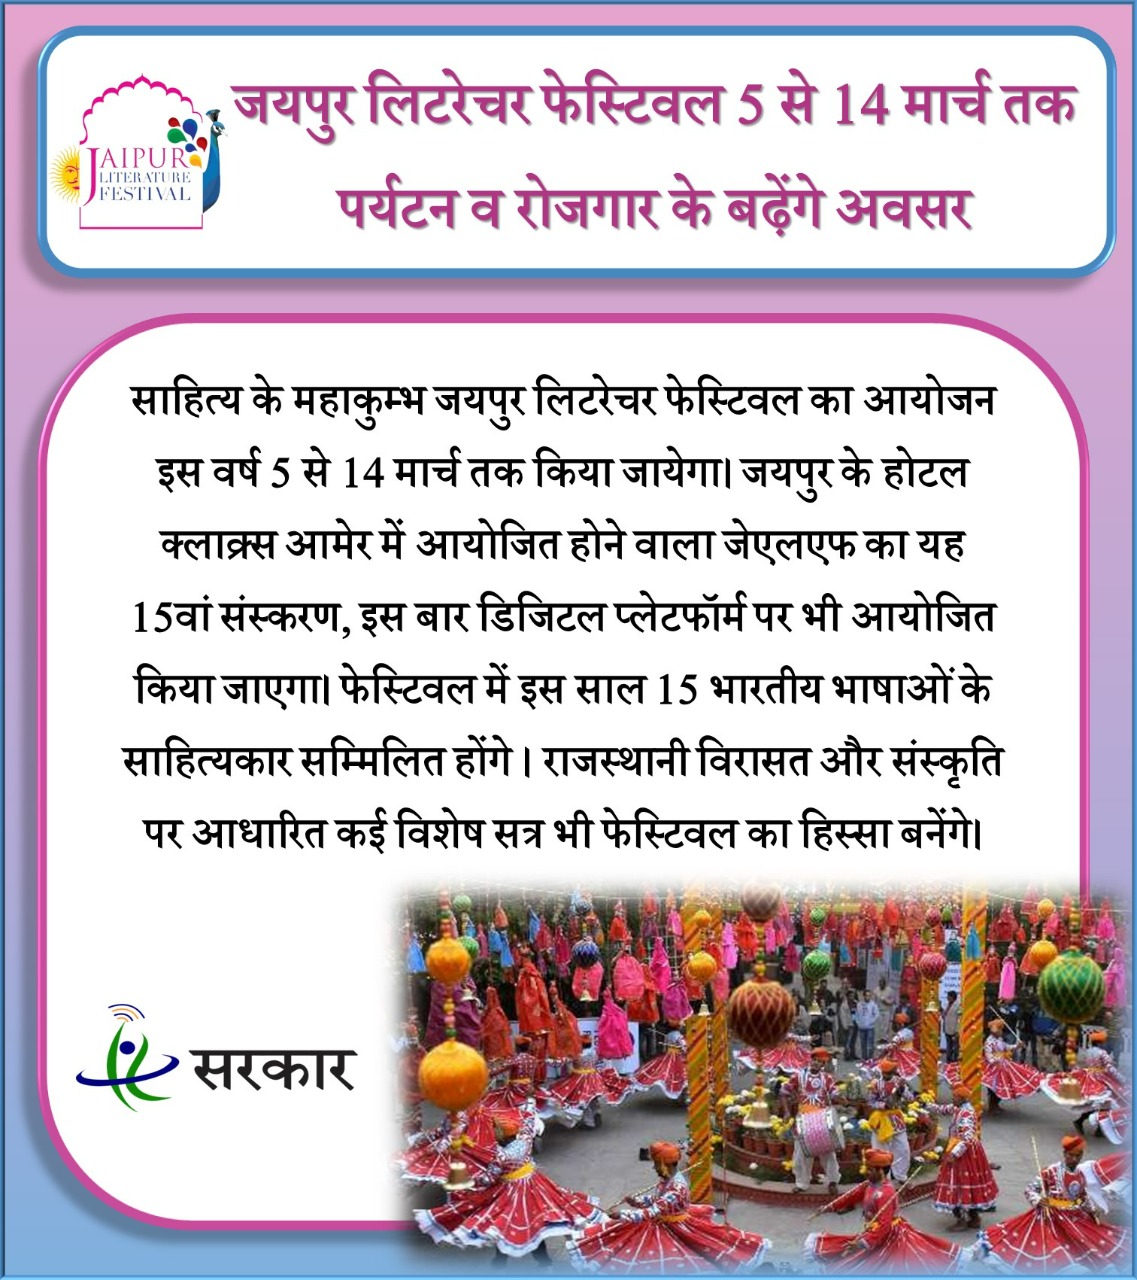 JLF : जयपुर लिटरेचर फेस्टिवल 5 मार्च से होगा शुरू